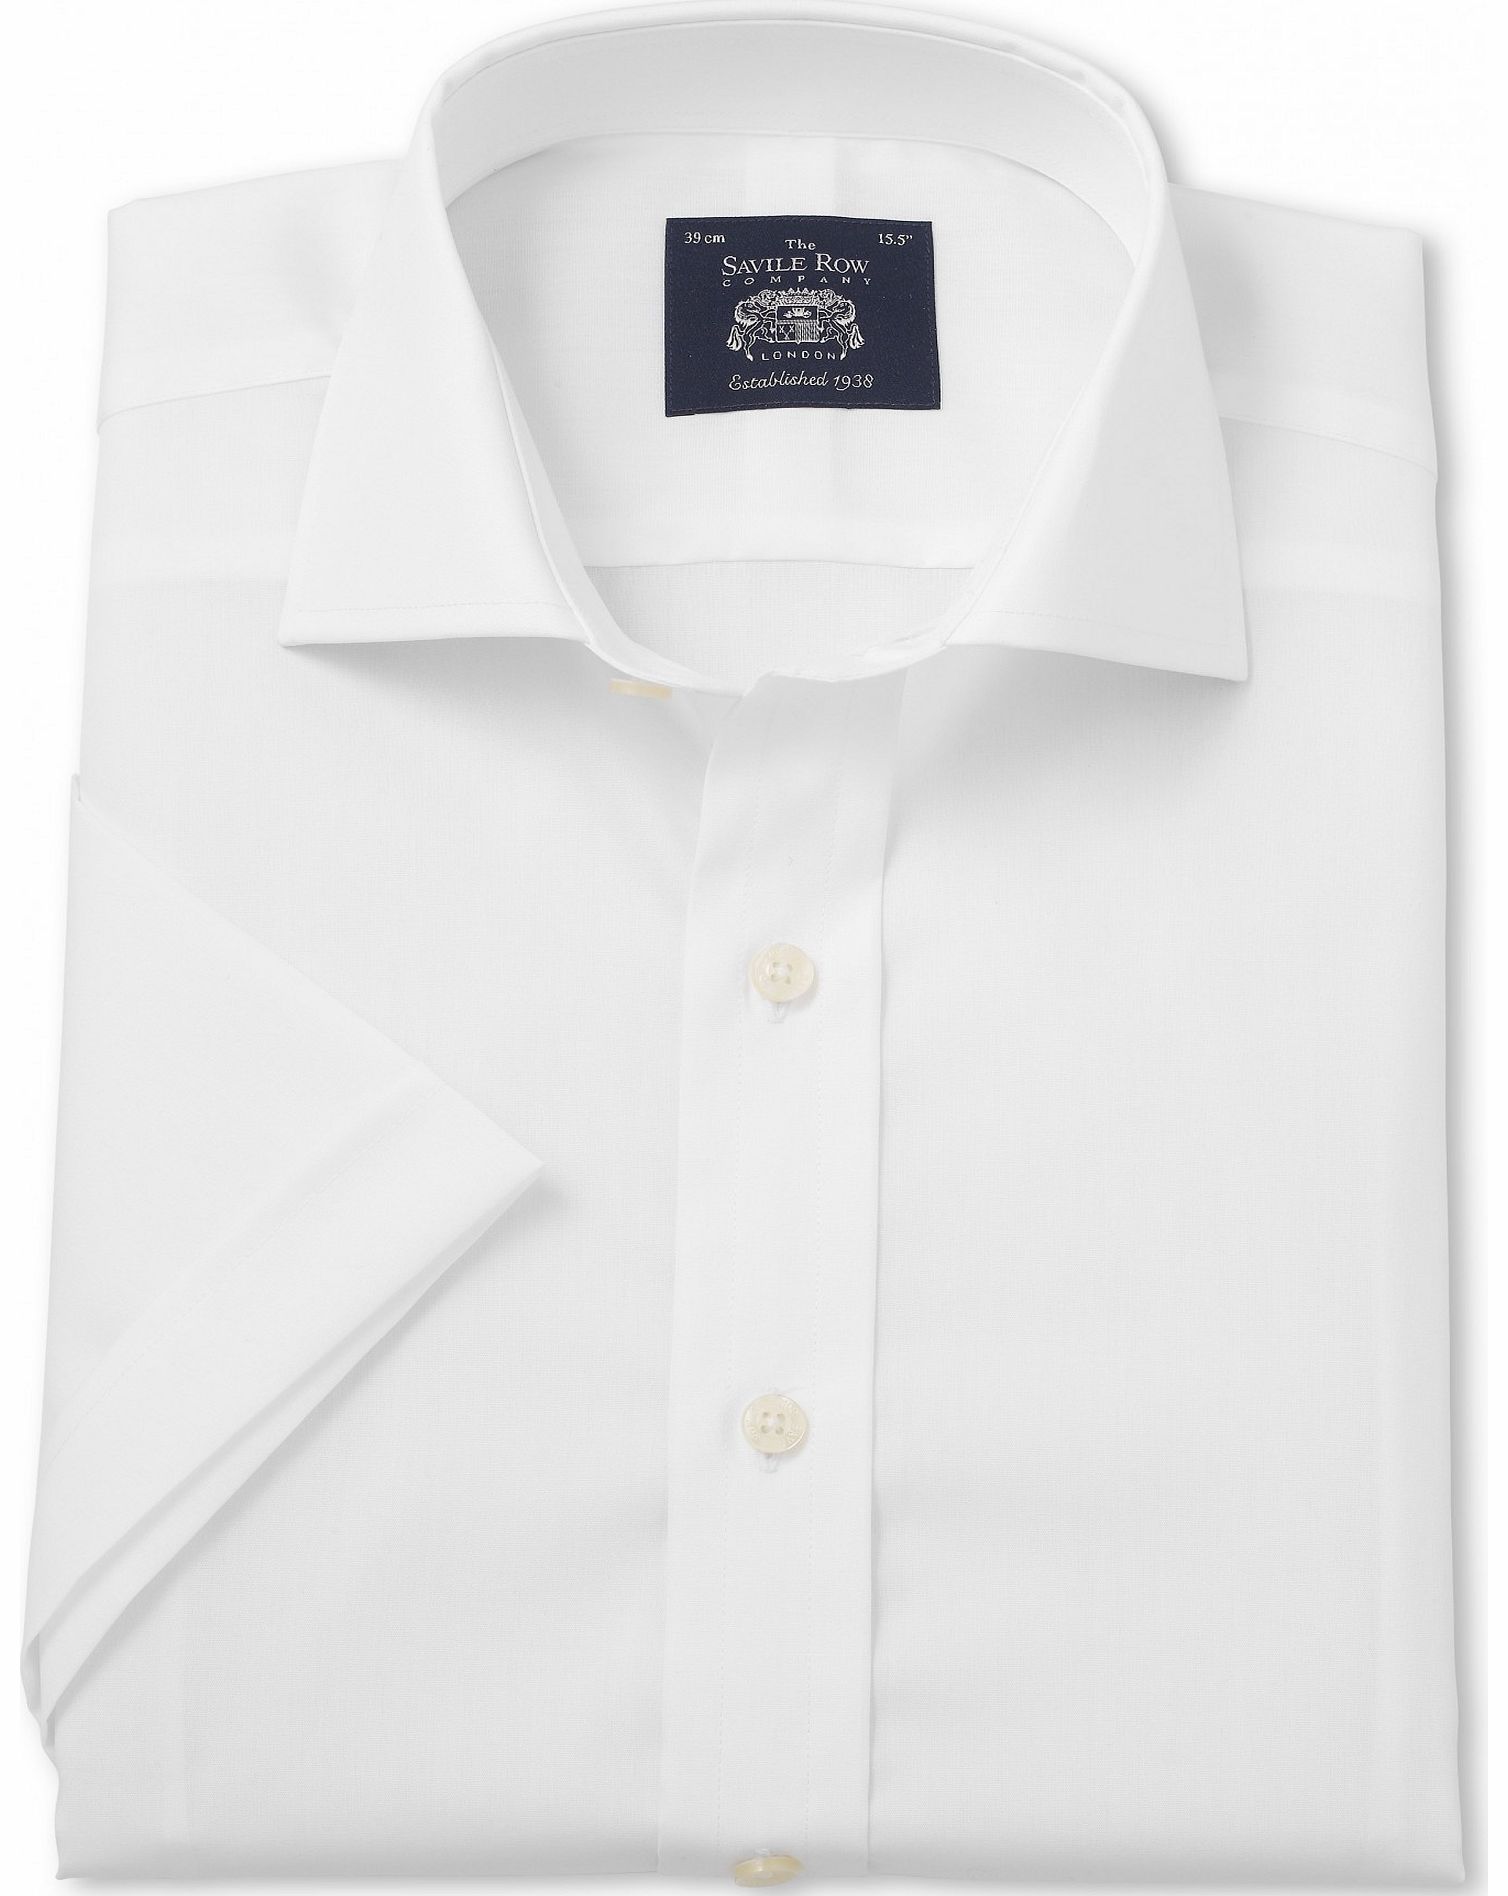 White Slim Fit Short Sleeve Shirt 17 1/2`` Short